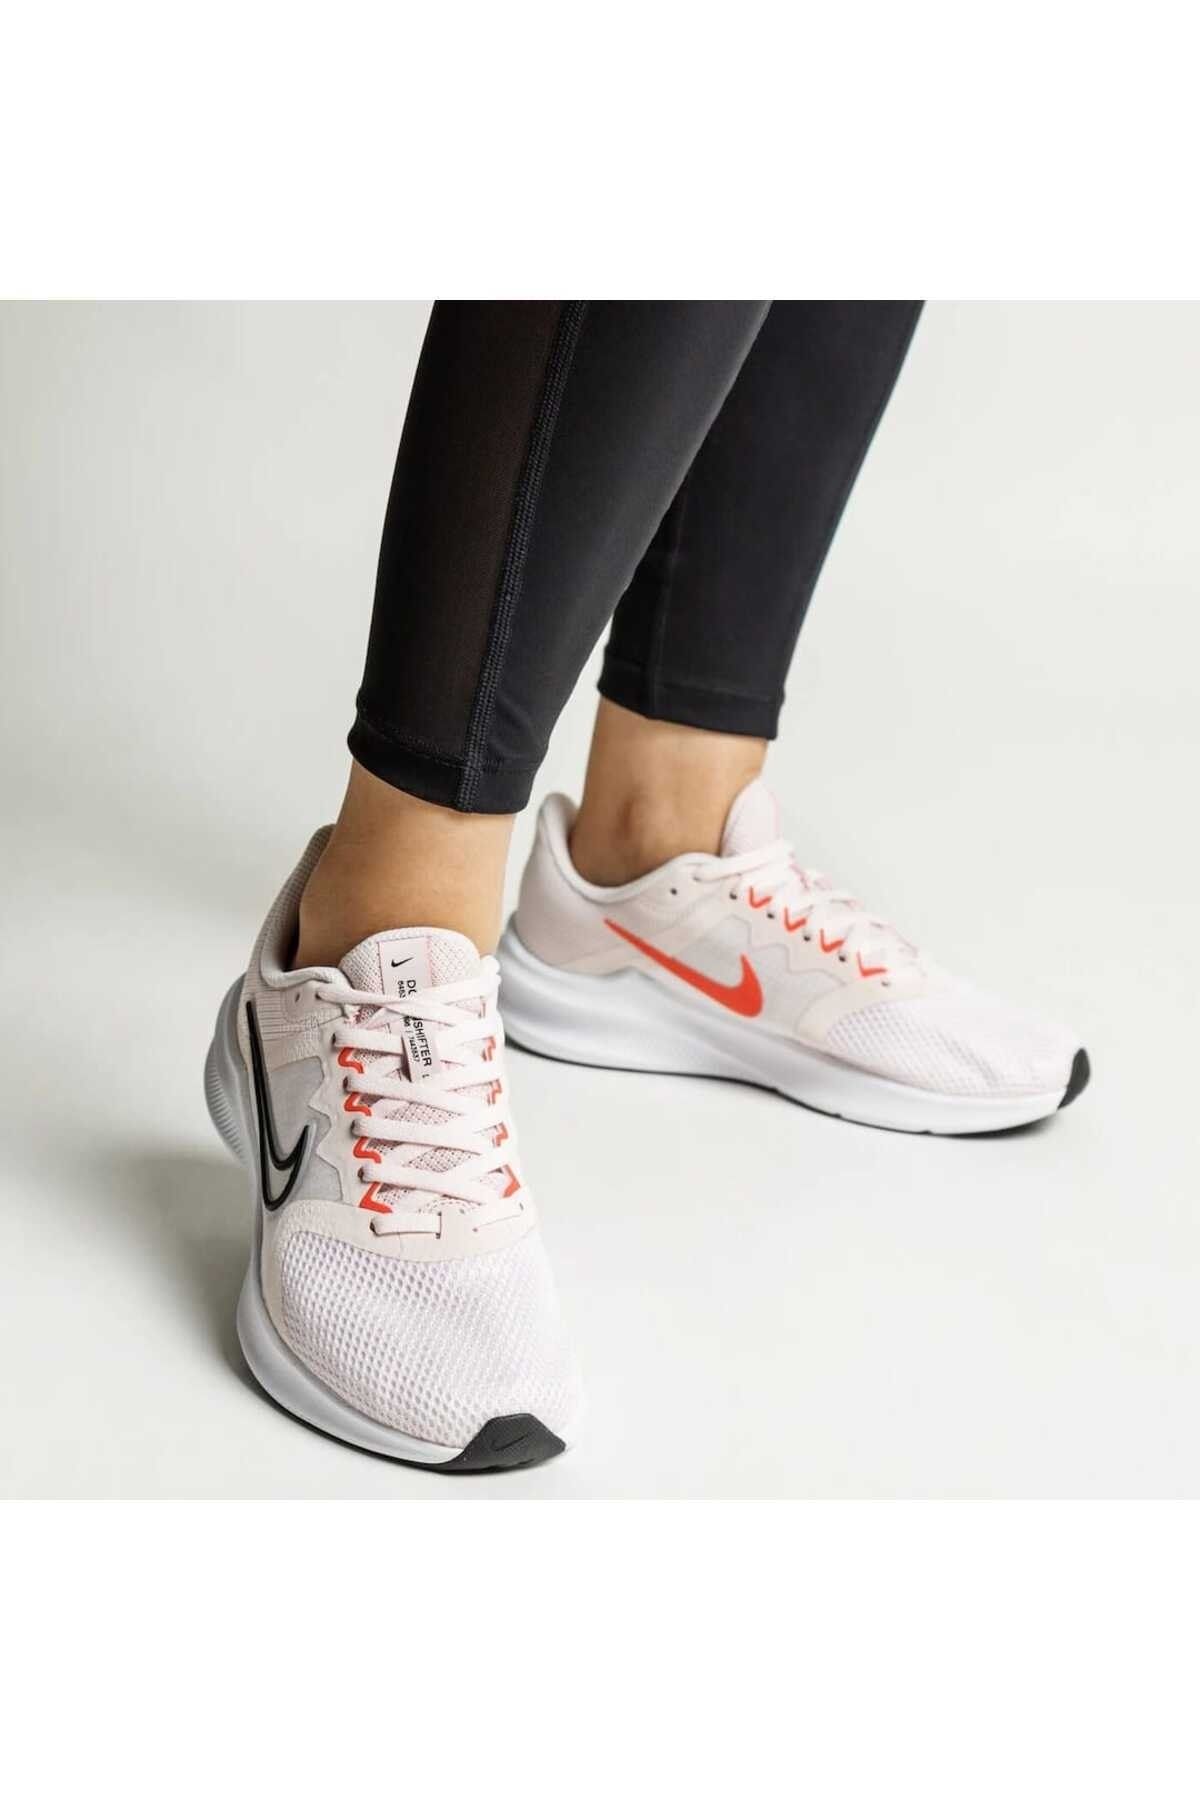 Nike Downshifter 11 Pembe Kadın Koşu Yürüyüş Ayakkabısı-